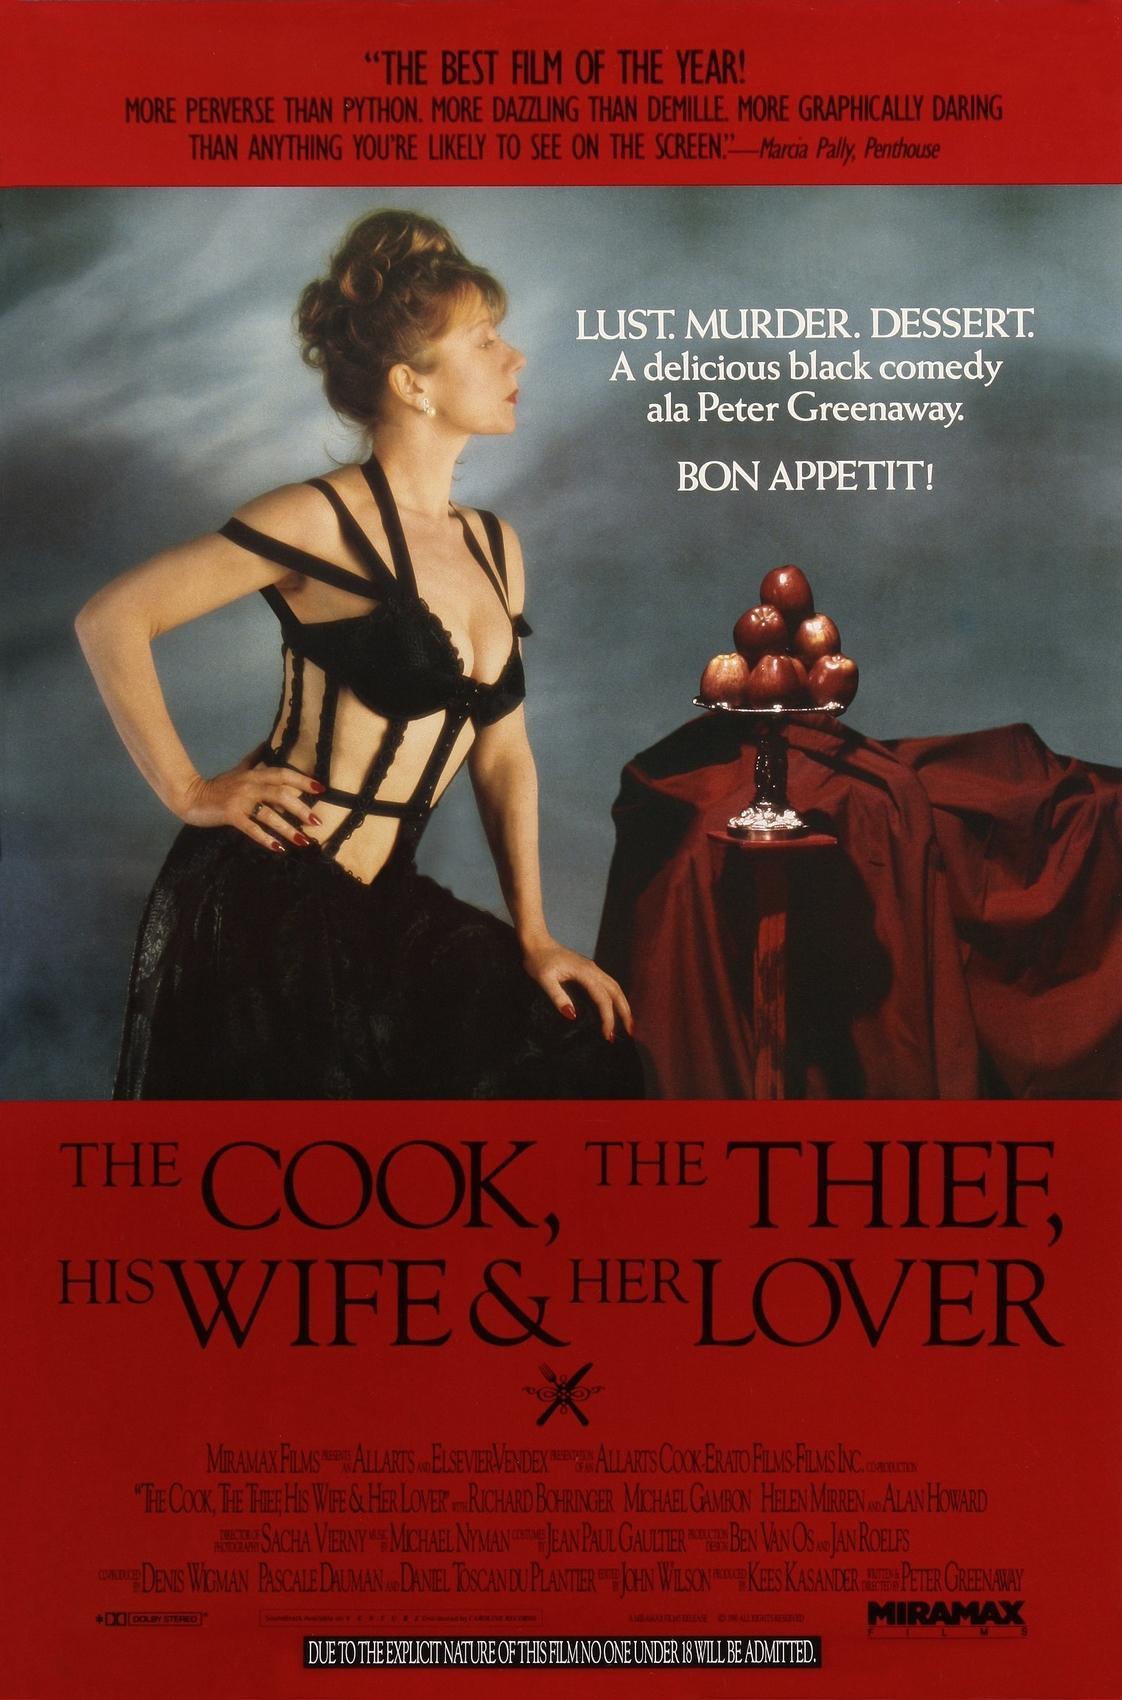 Постер фильма Повар, вор, его жена и её любовник | Cook the Thief His Wife & Her Lover